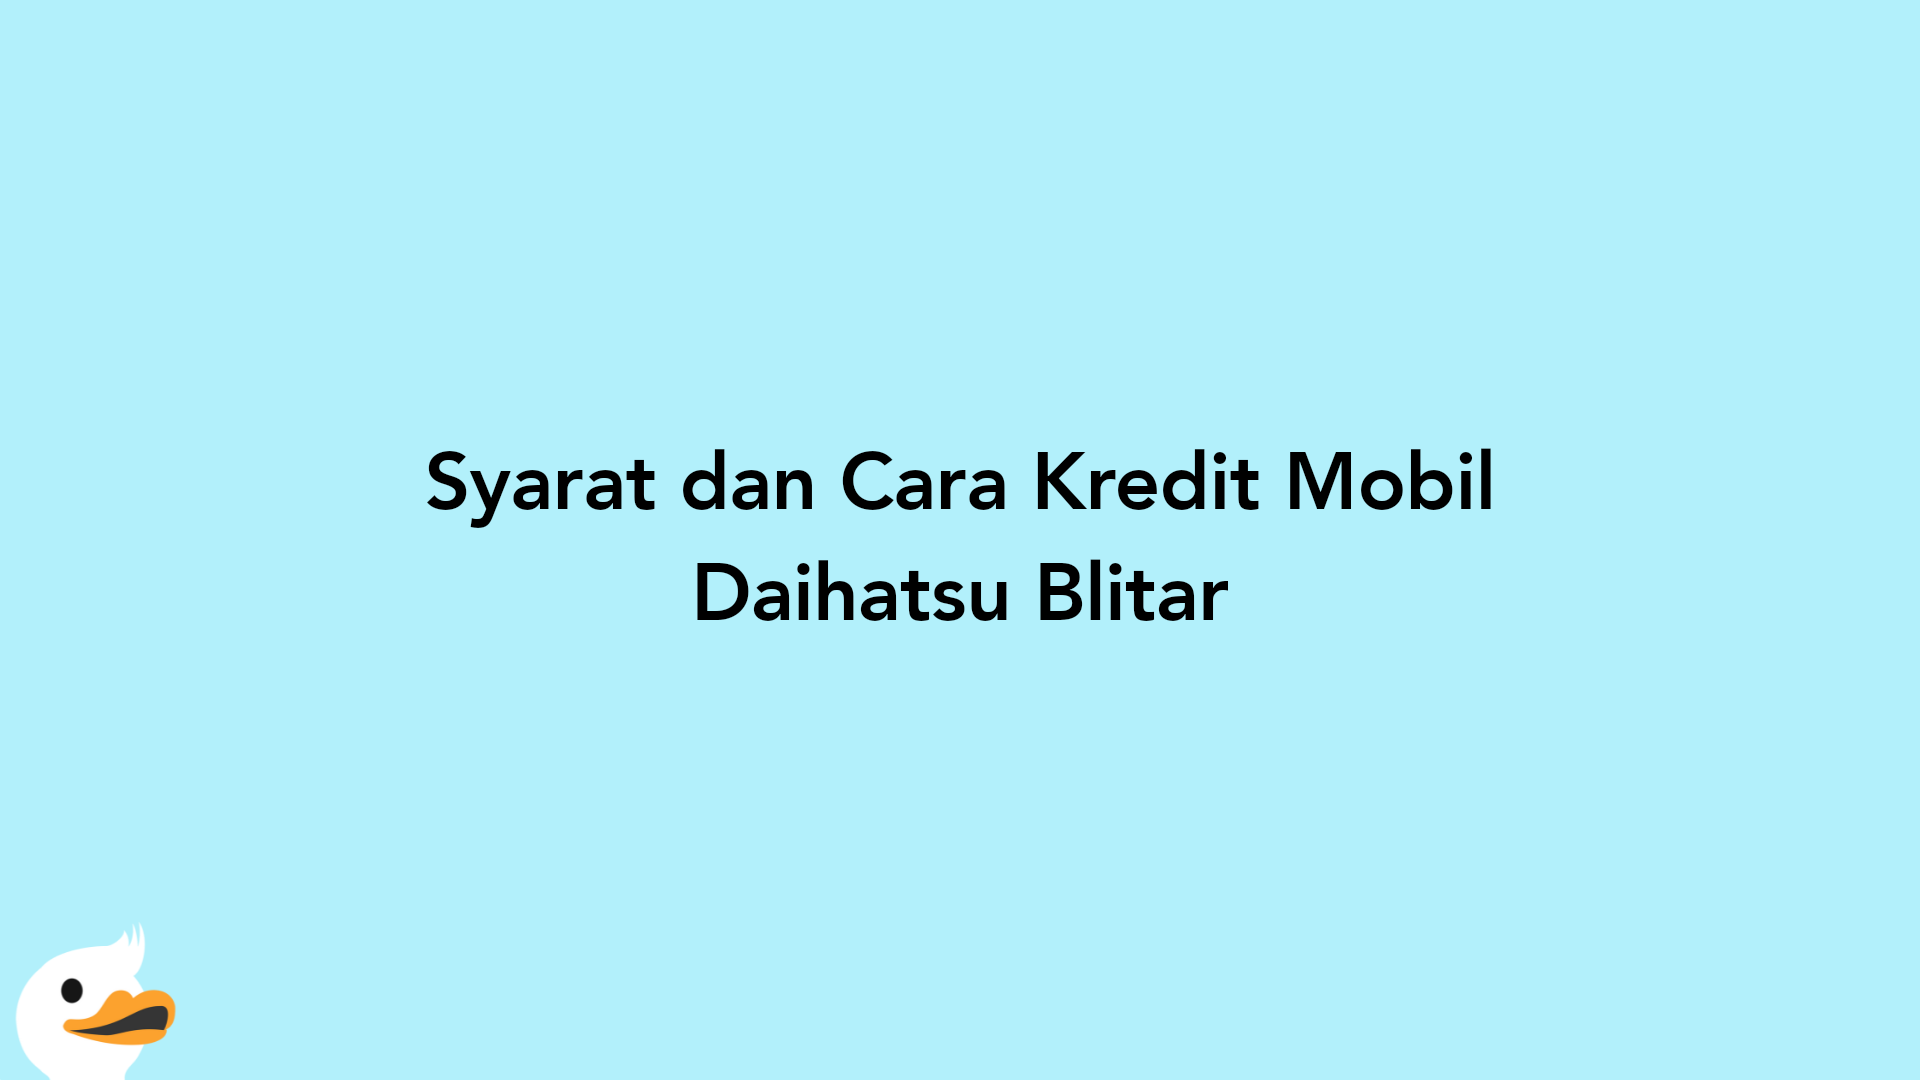 Syarat dan Cara Kredit Mobil Daihatsu Blitar